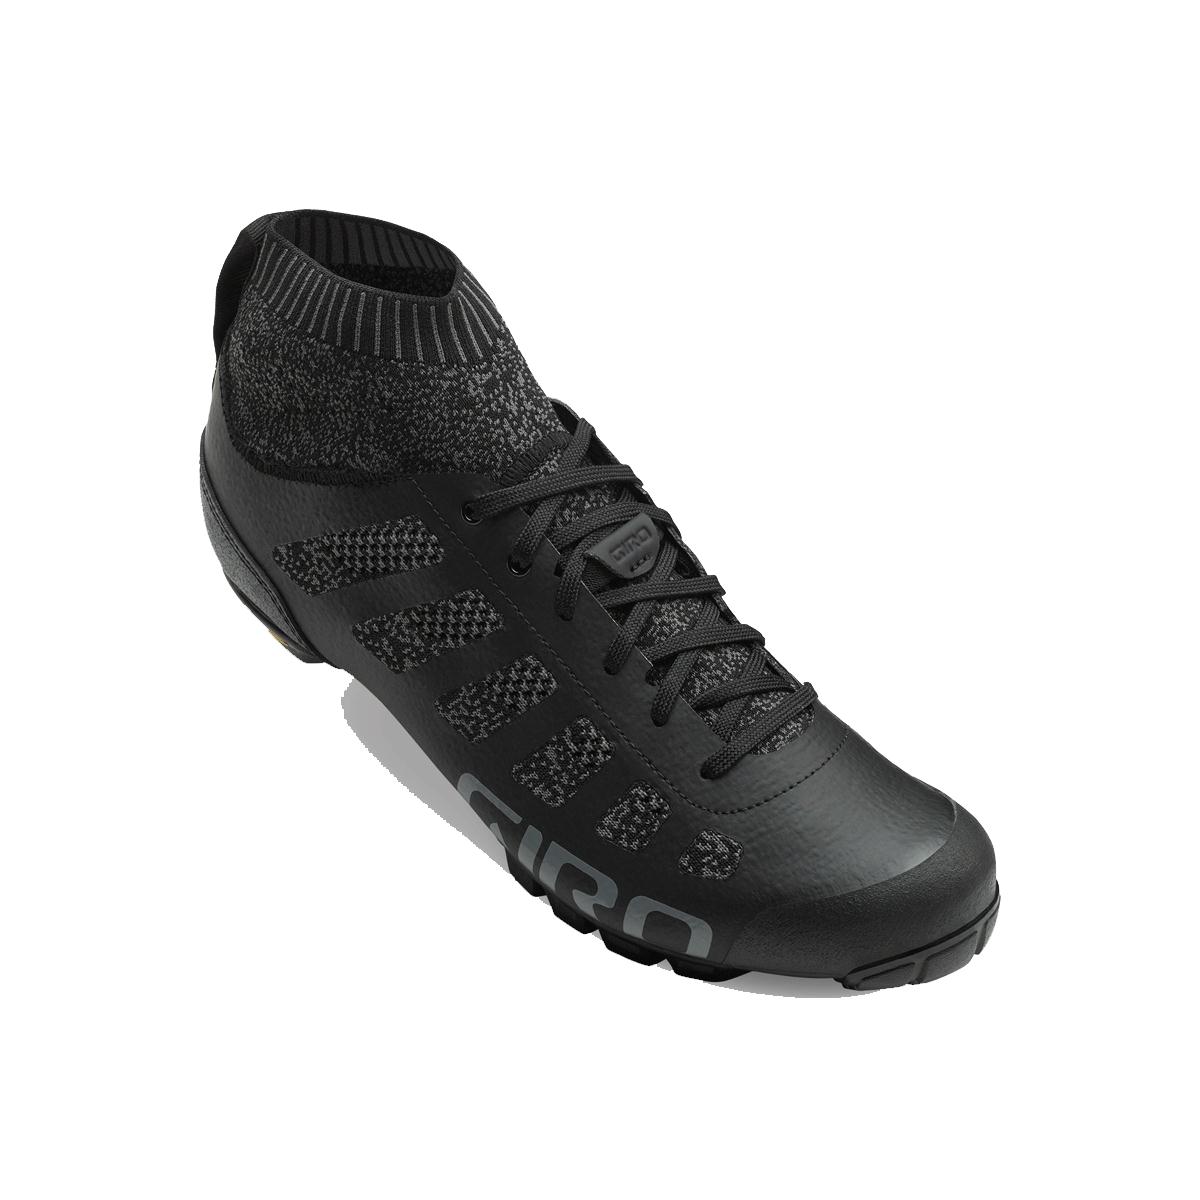 GIRO Empire VR70 Knit MTB Cycling Shoes 2018 Black/Charcoal 44